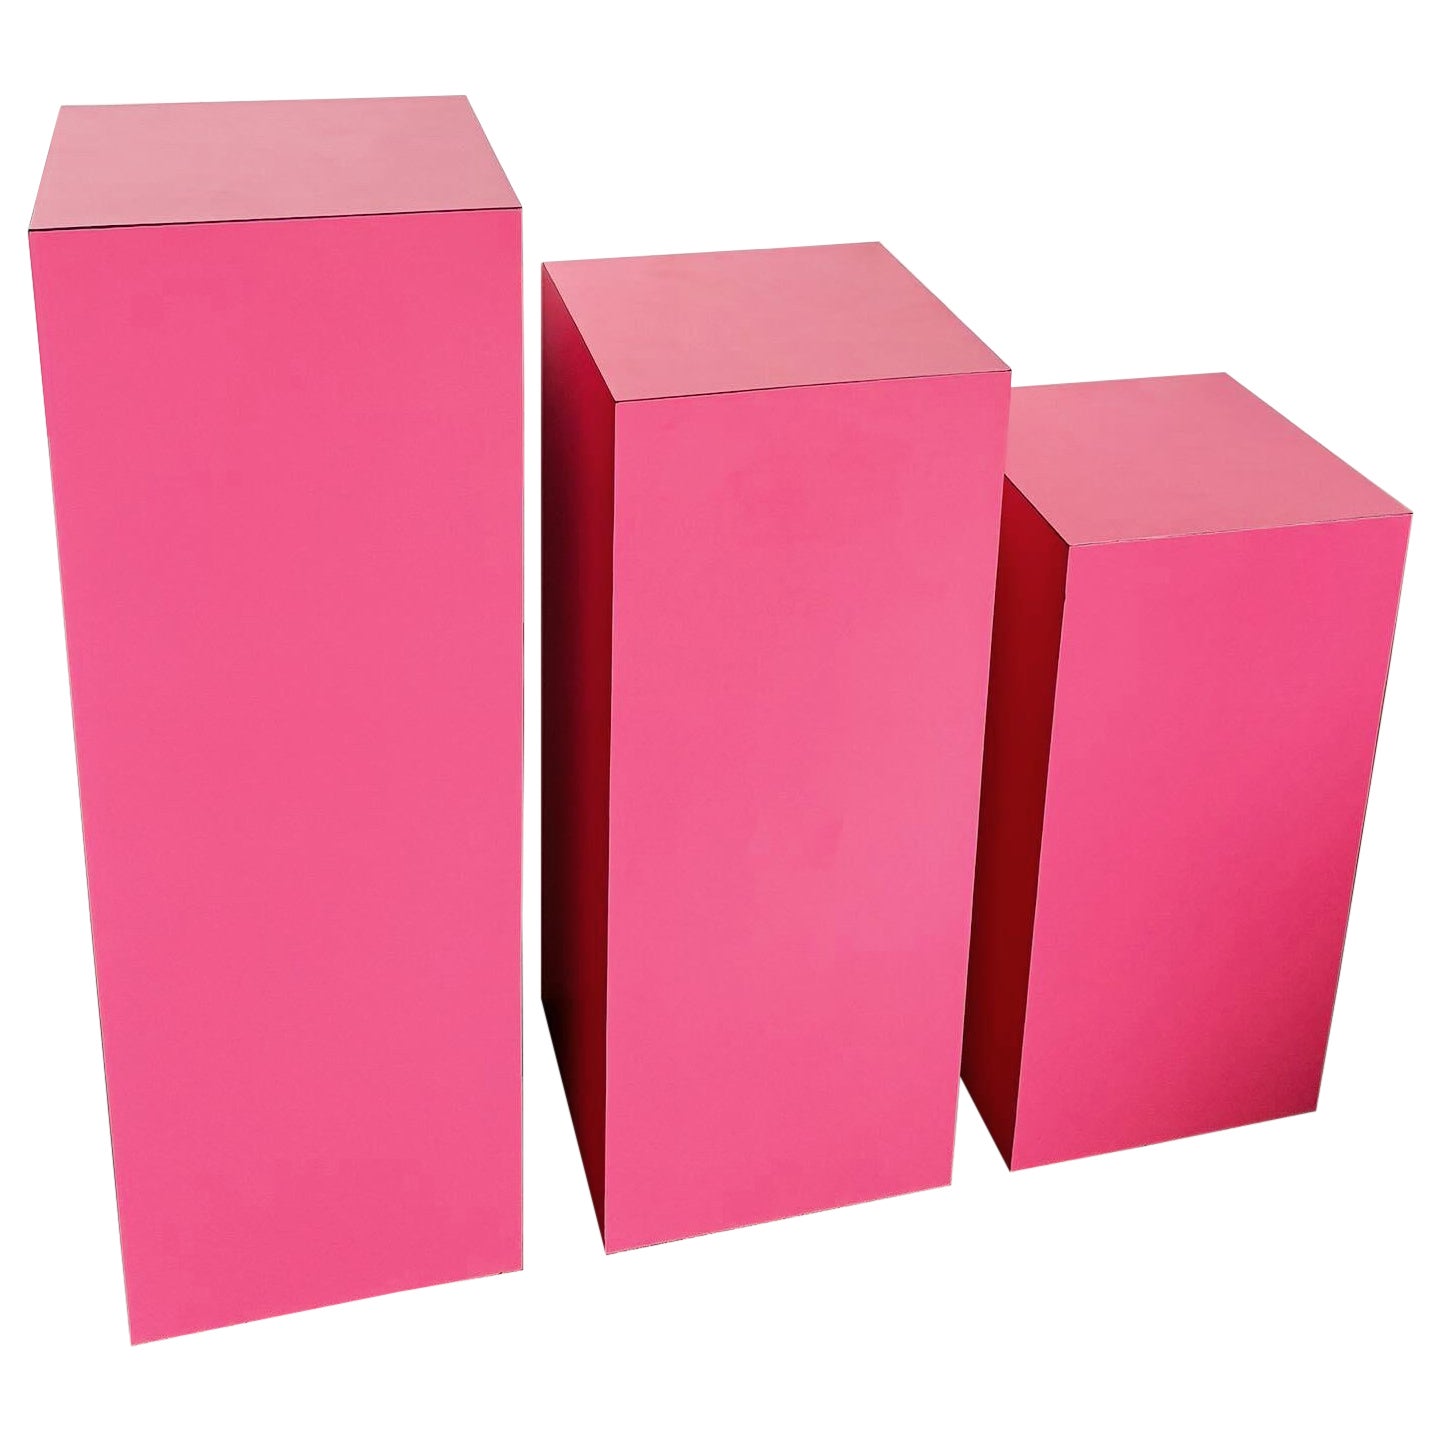 Postmodern Hot Pink Matte Laminate Ascending Rectangular Pedestal Set - Set of 3 For Sale